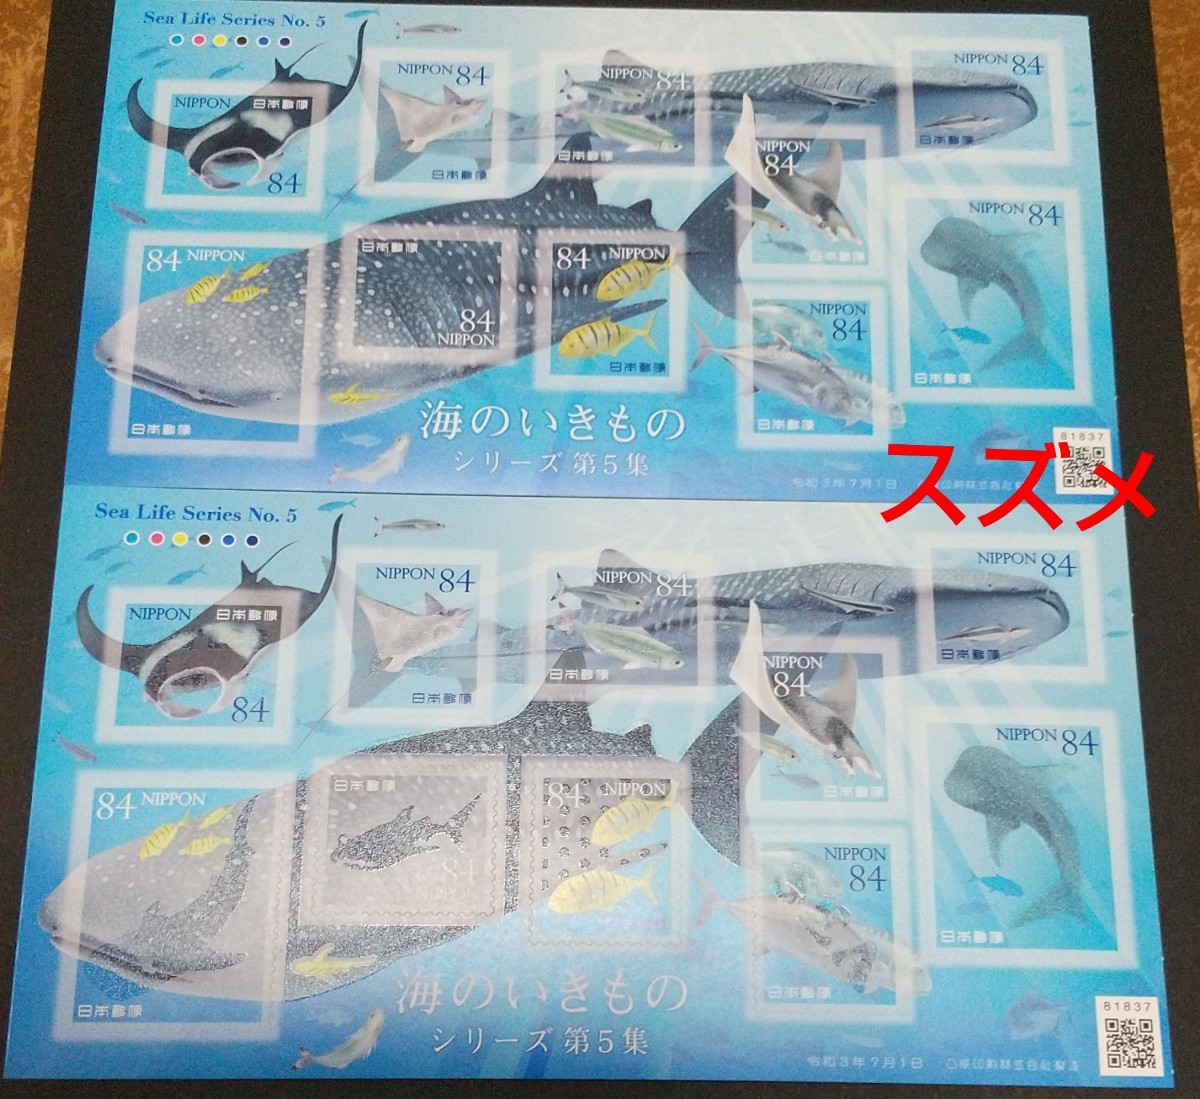 海のいきものシリーズ第5集 84円 シール切手 2シート 1680円分  シール式切手 記念切手